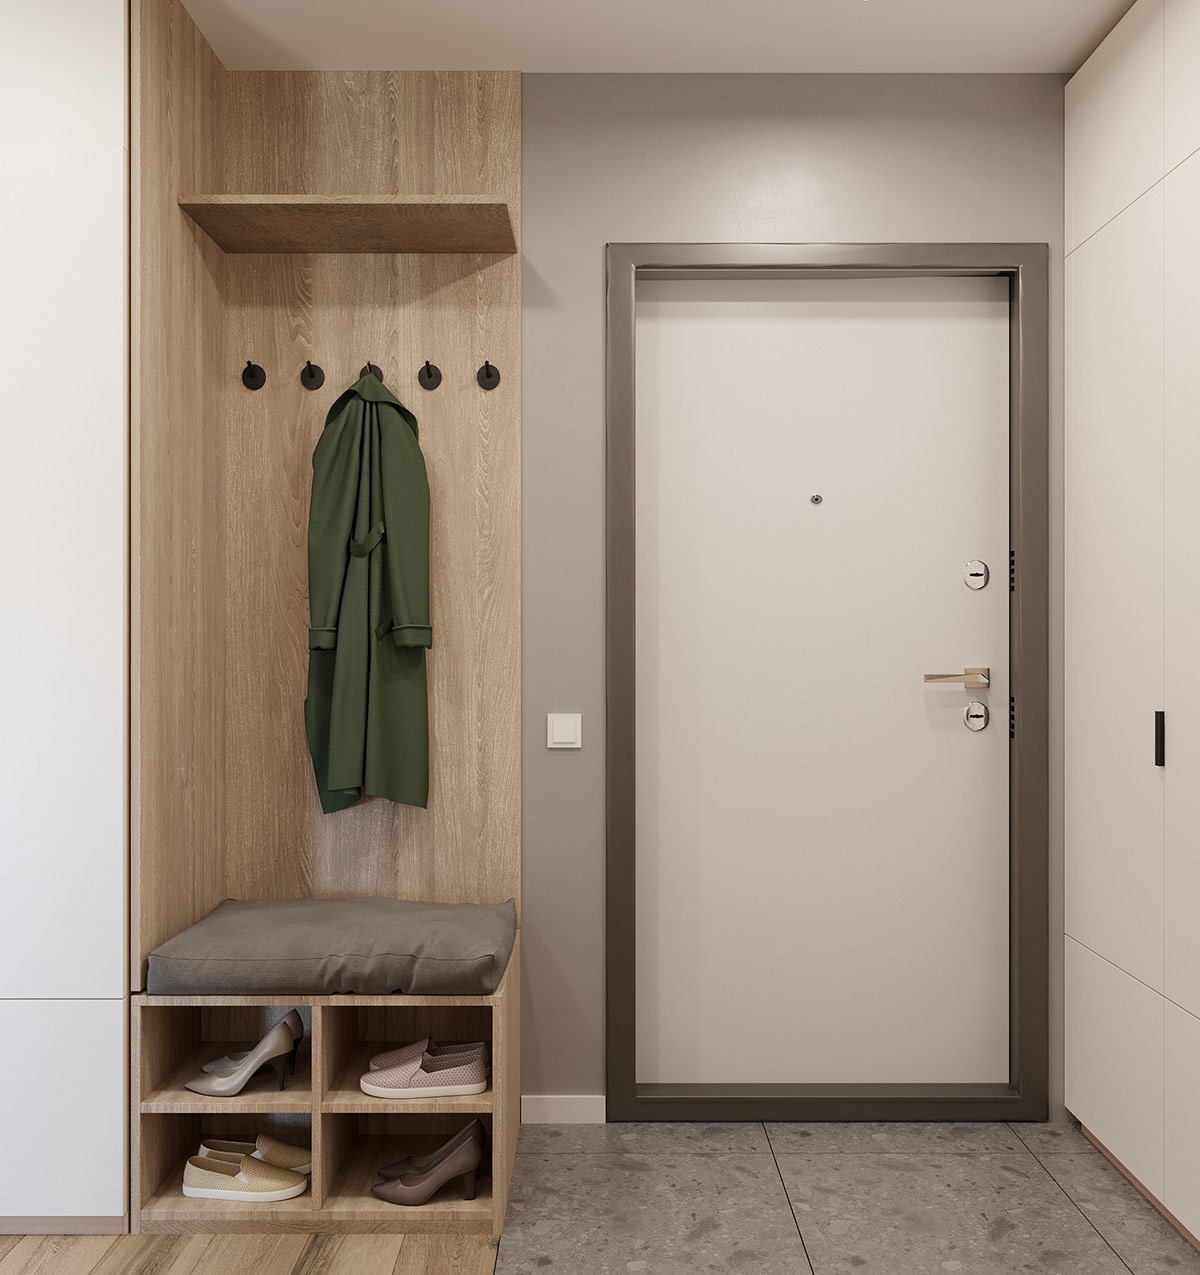 2间40平简洁紧凑的小公寓空间设计